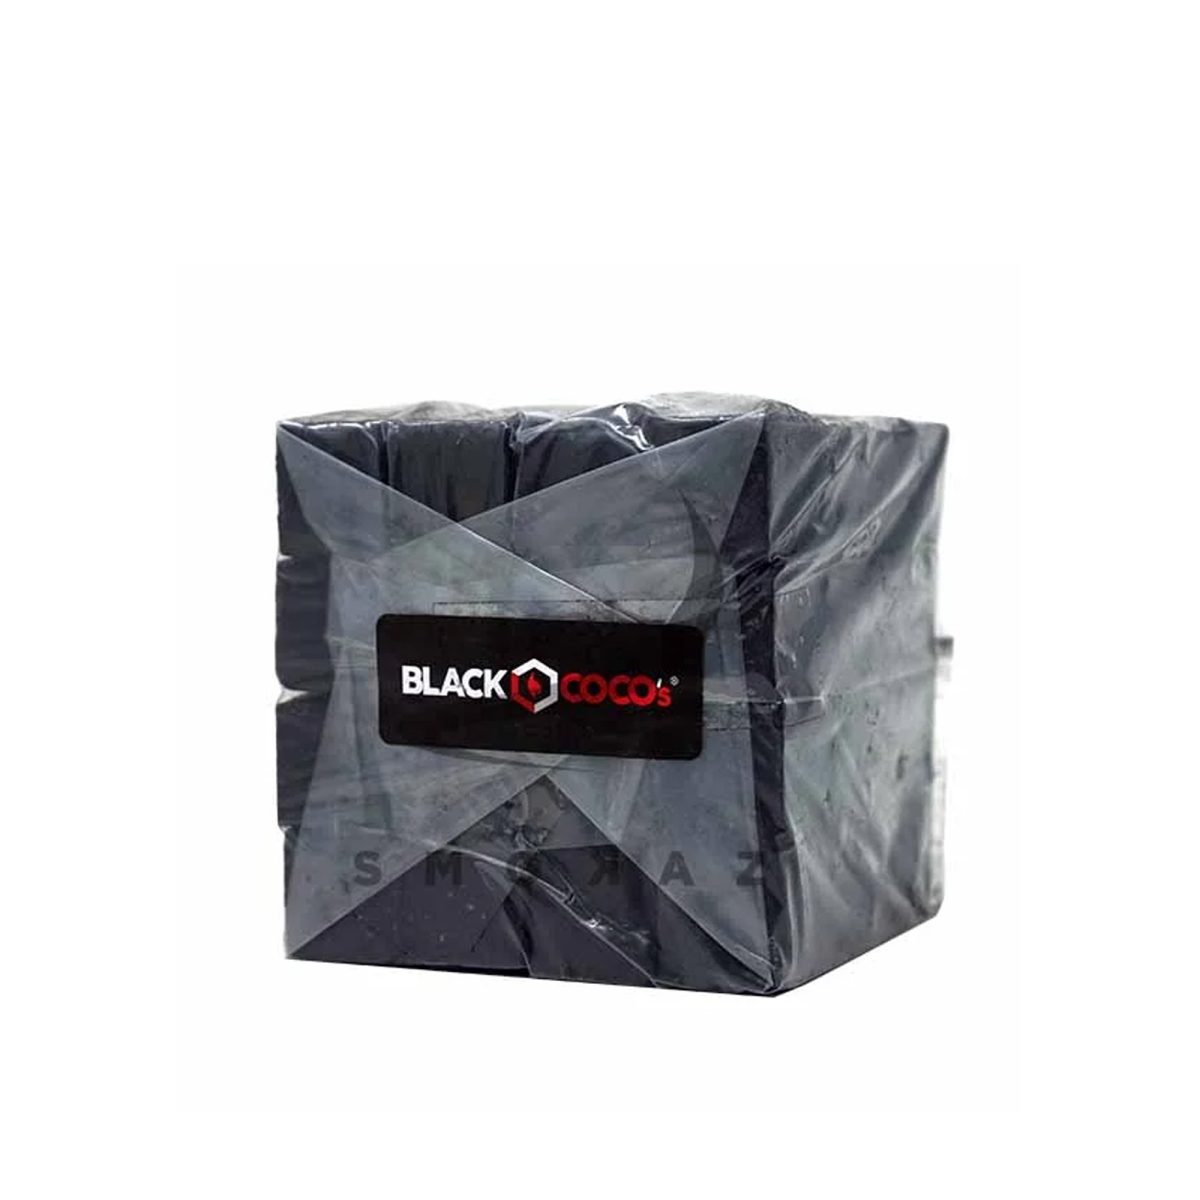 Black Coco's 1kg 26mm opakowanie zbiorcze